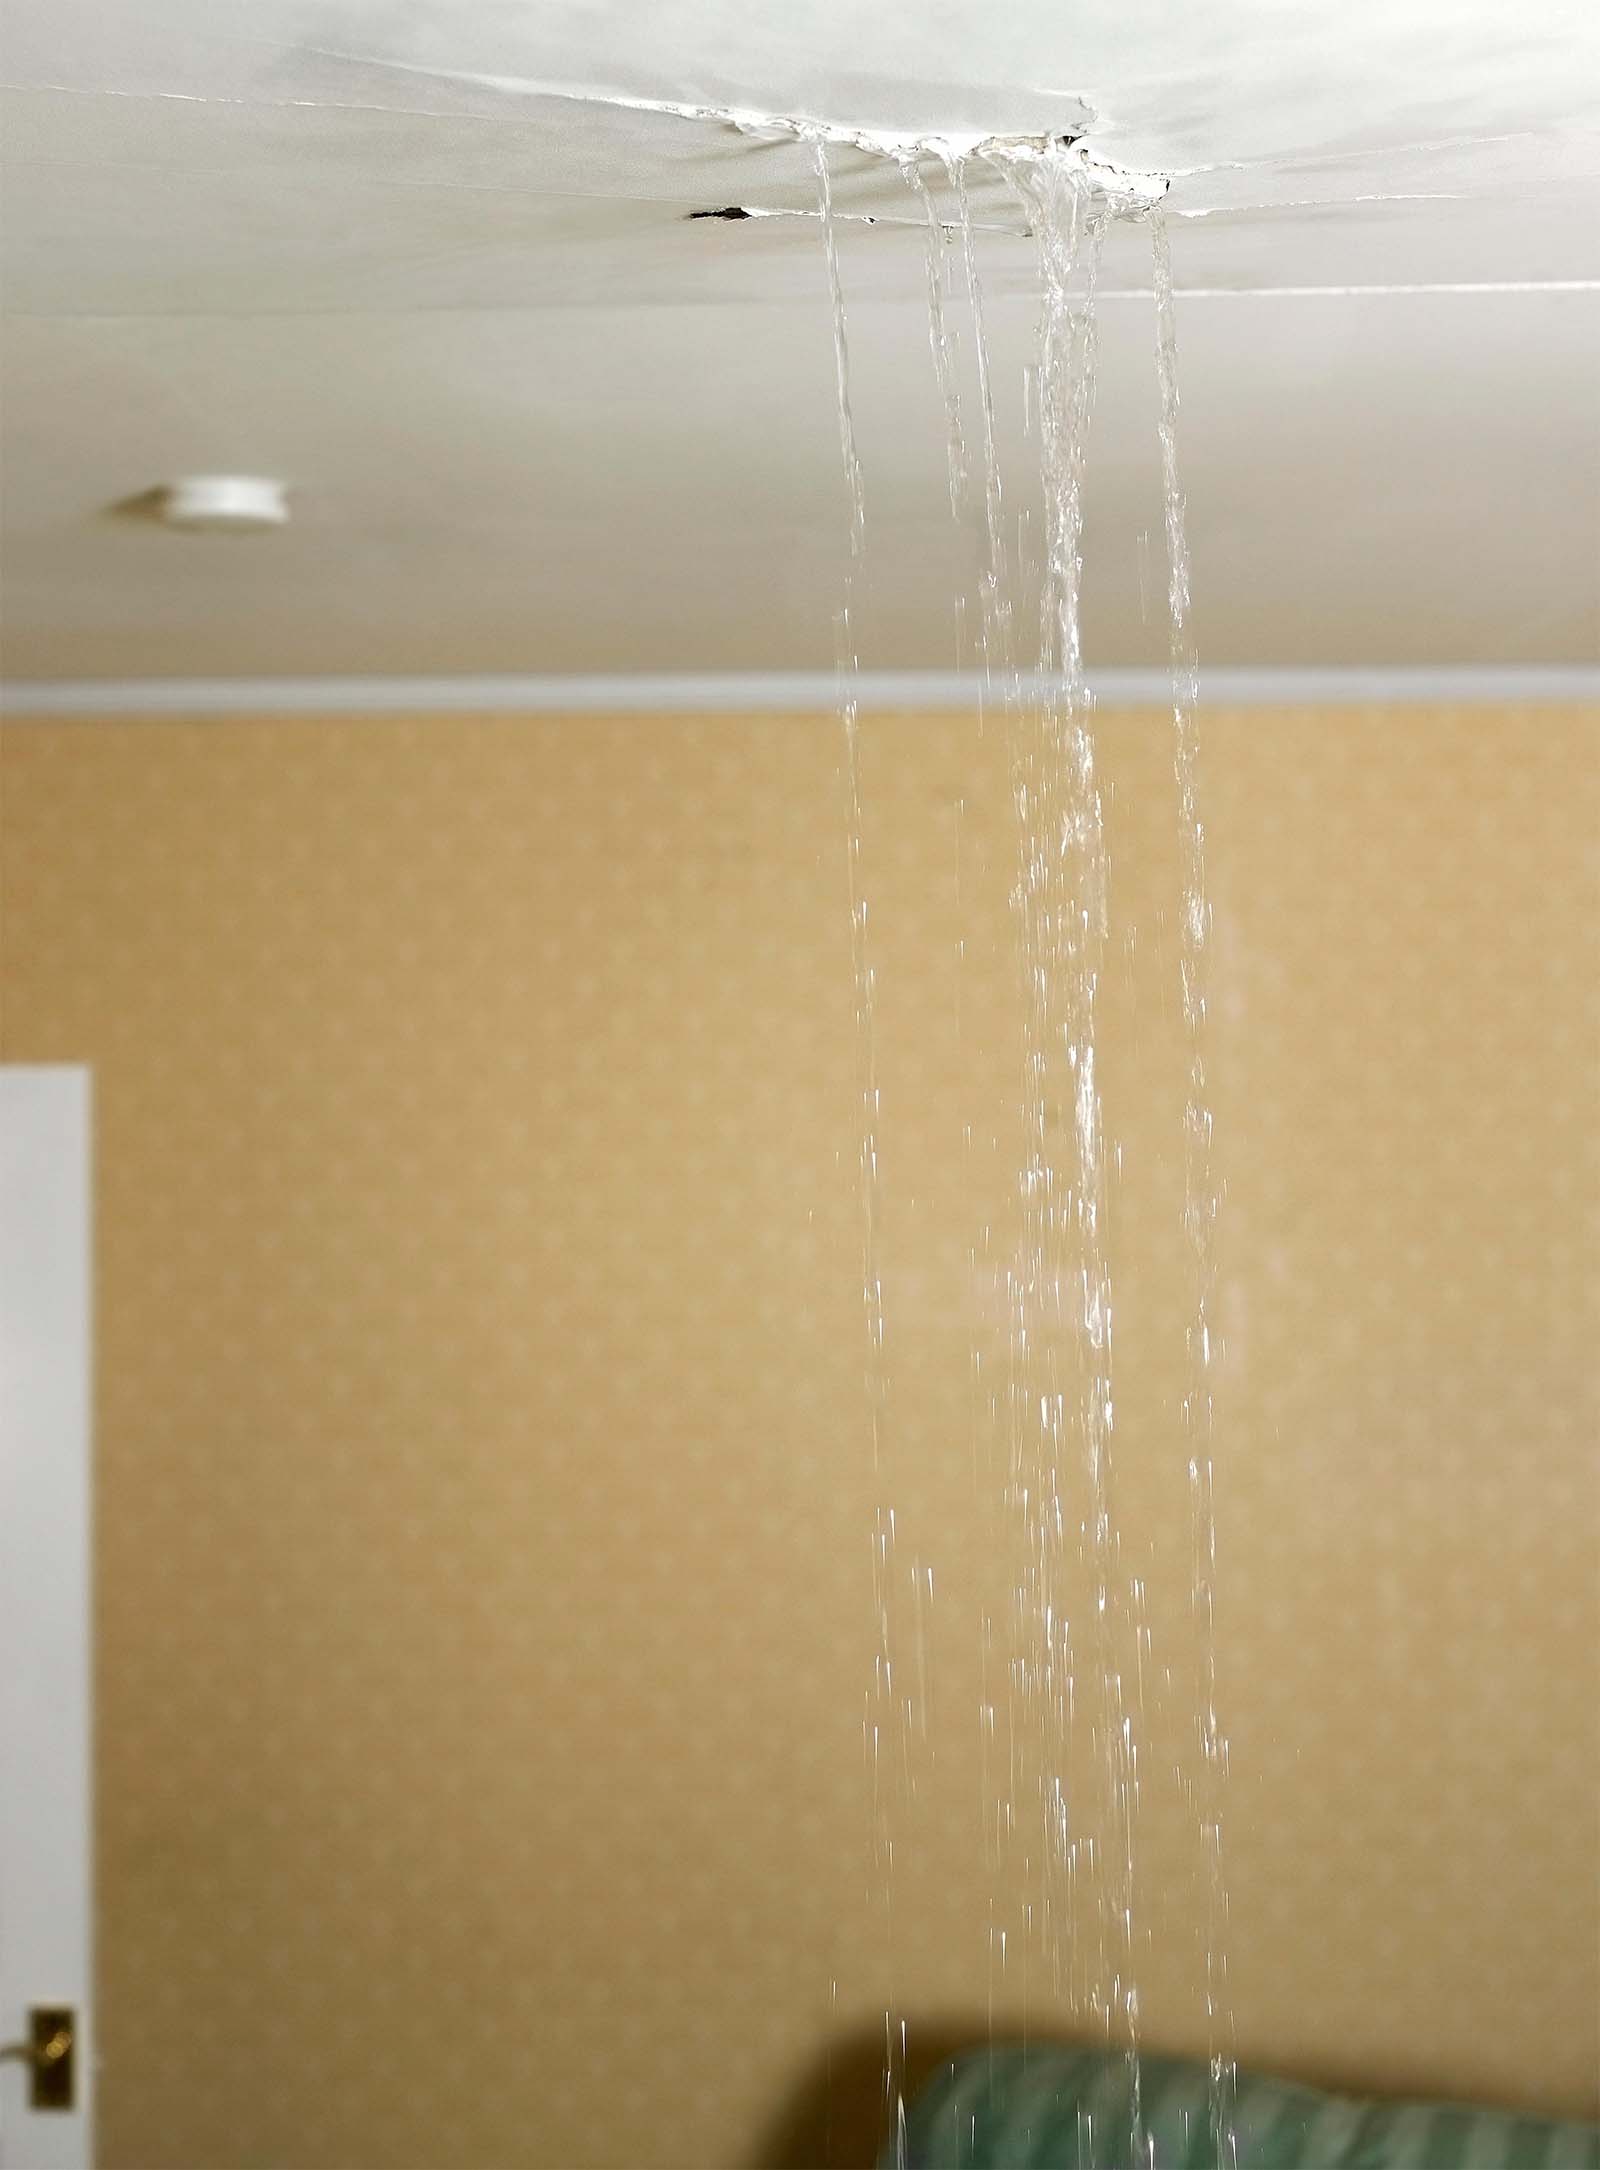 Water Leaking Through Ceiling Plastering Emergency